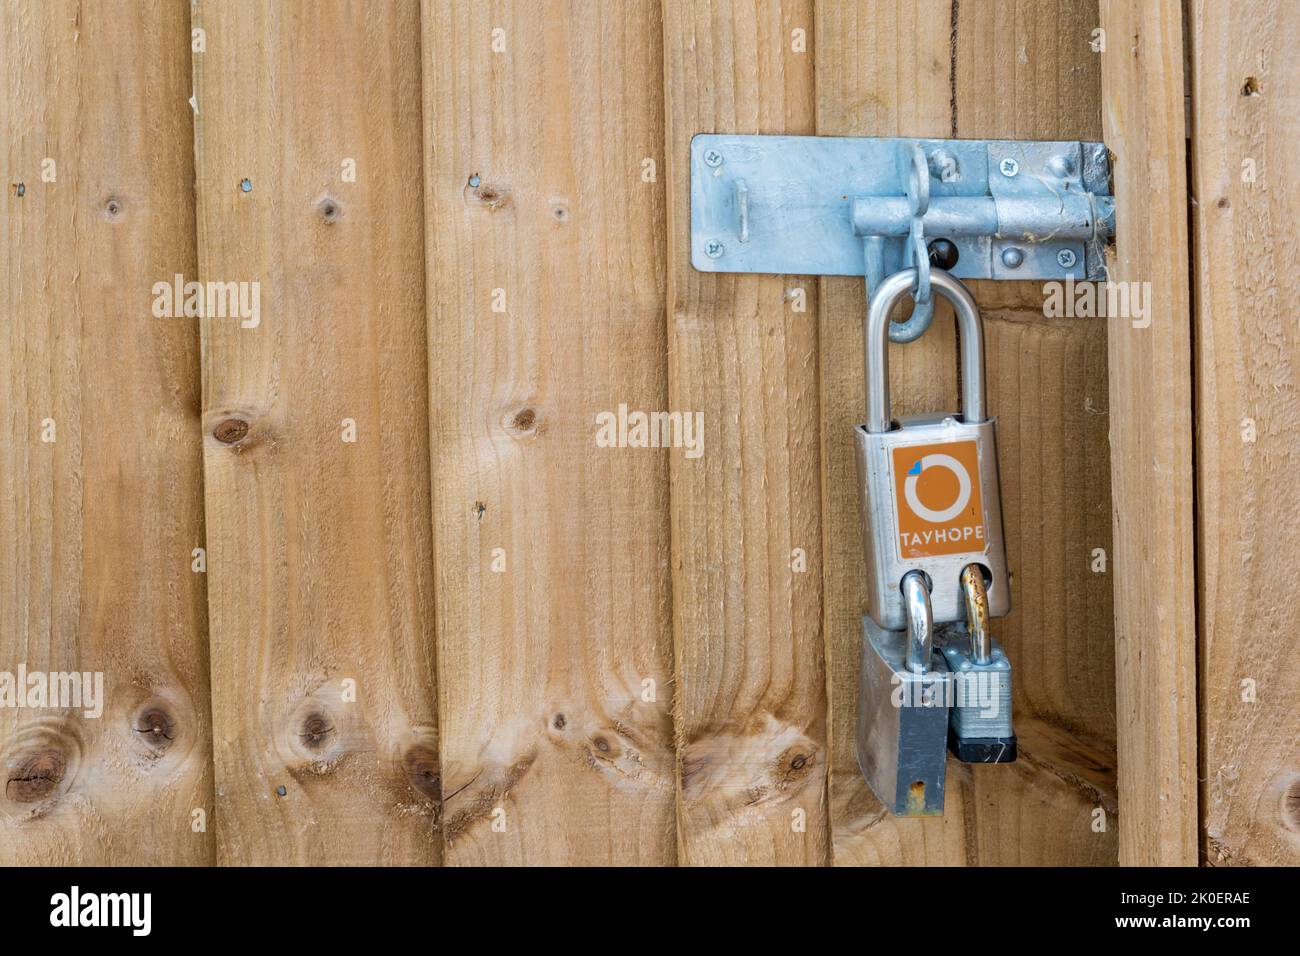 Ein doppeltes Vorhängeschloss, mit dem zwei Personen es mit unterschiedlichen Schlüsseln öffnen können. Stockfoto